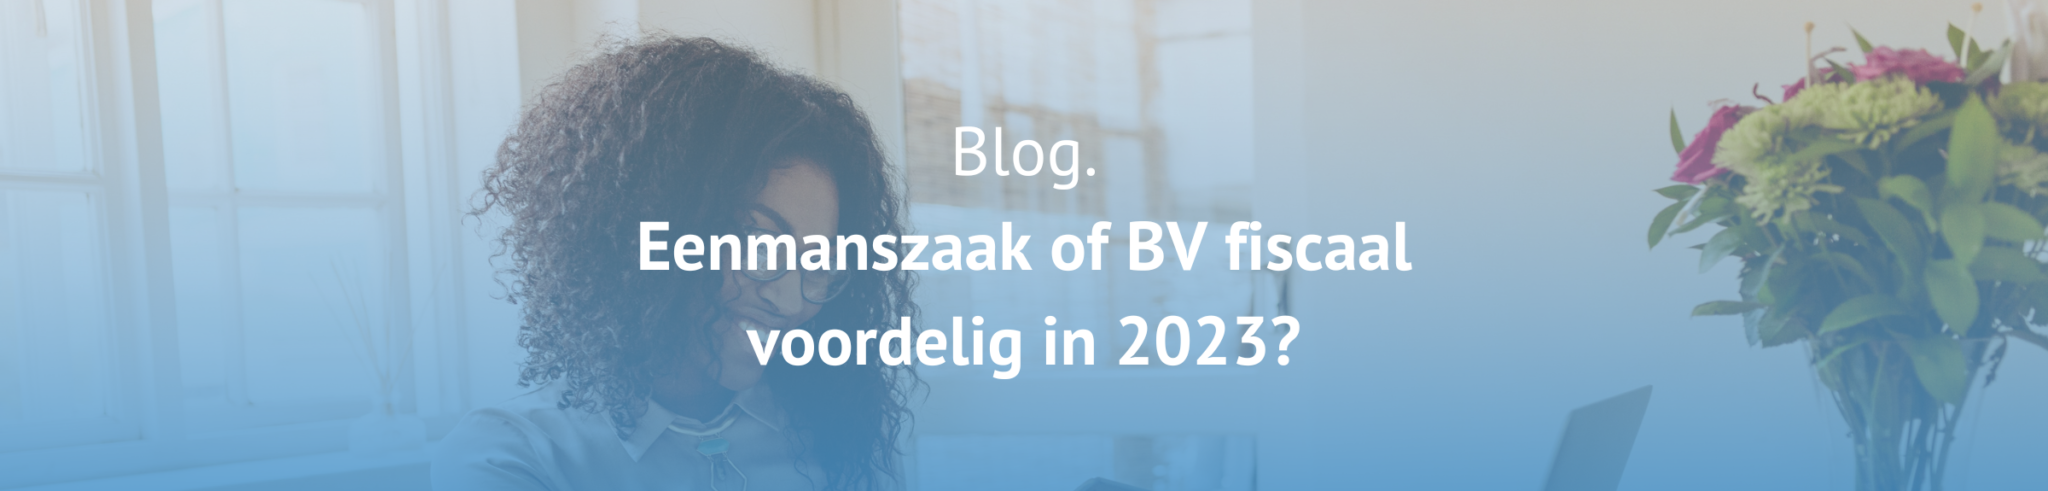 Eenmanszaak of BV fiscaal voordelig in 2023?